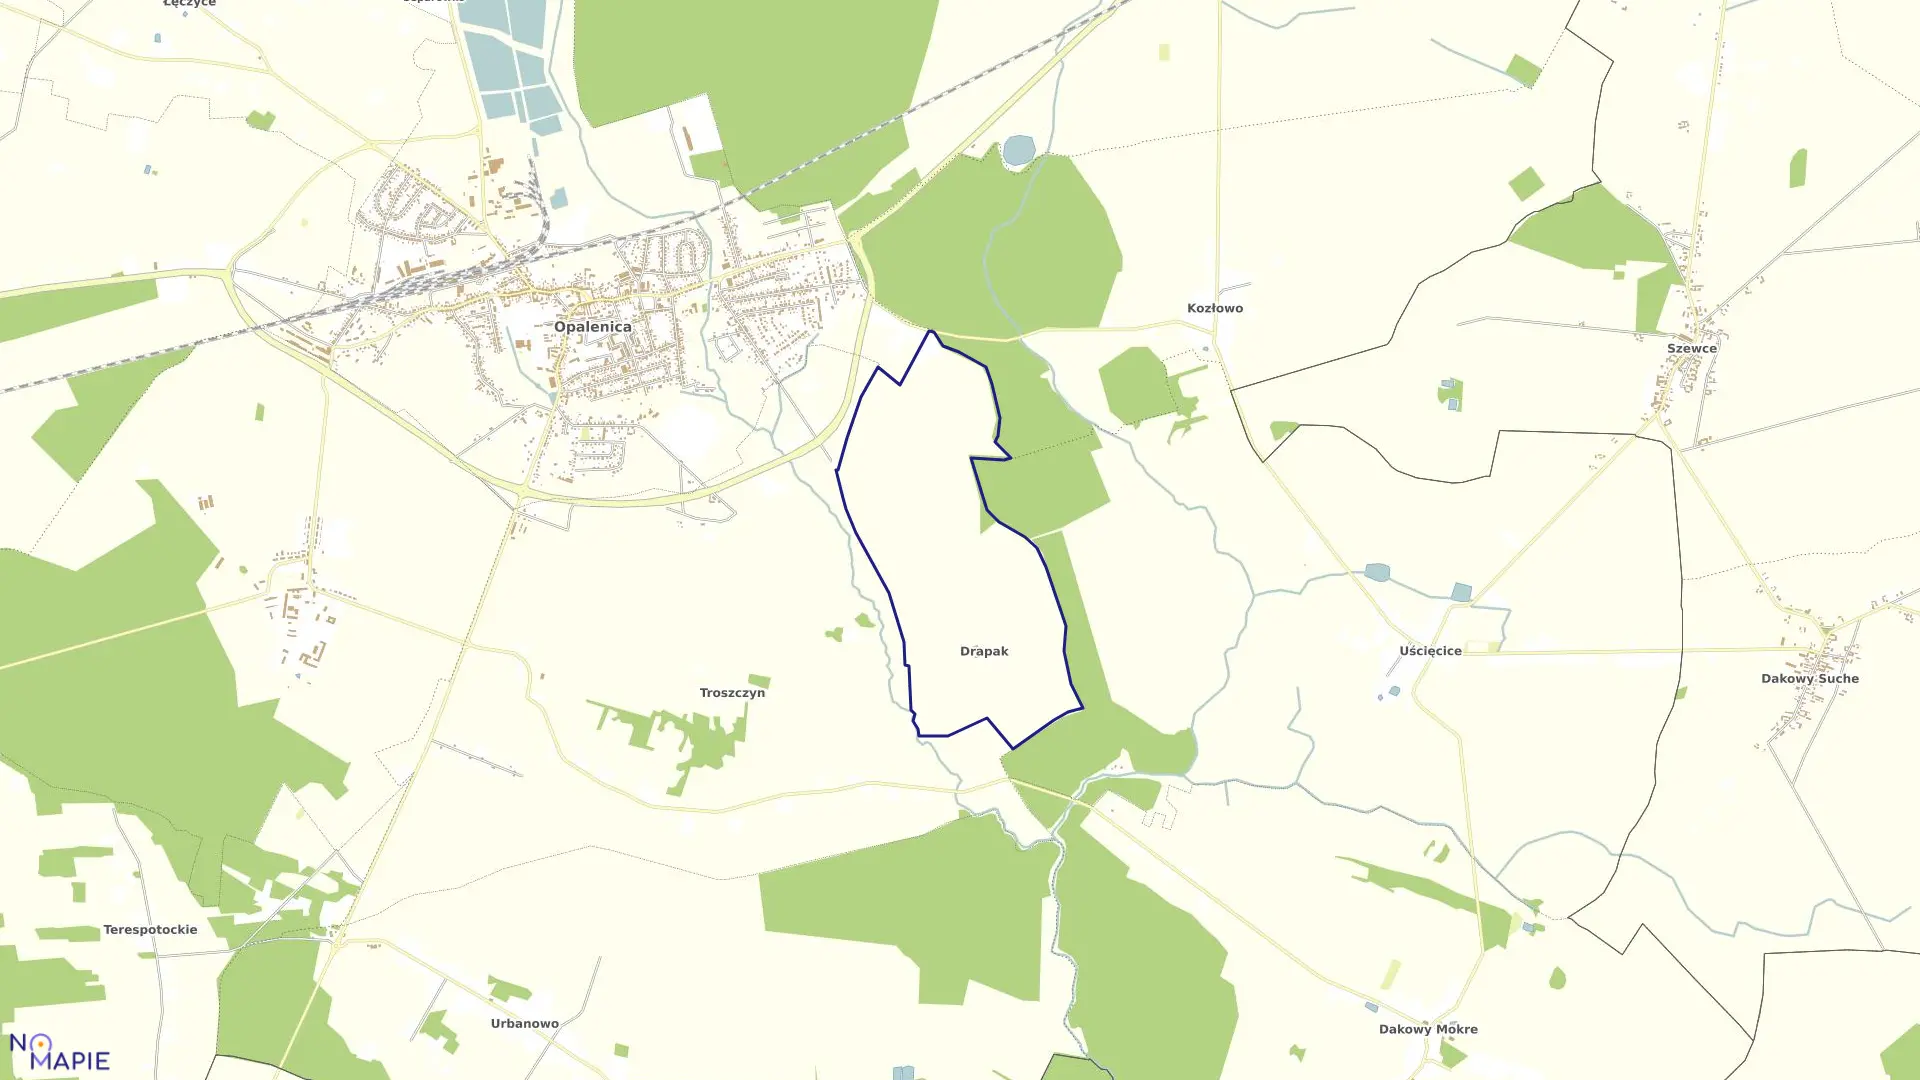 Mapa obrębu DRAPAK w gminie Opalenica